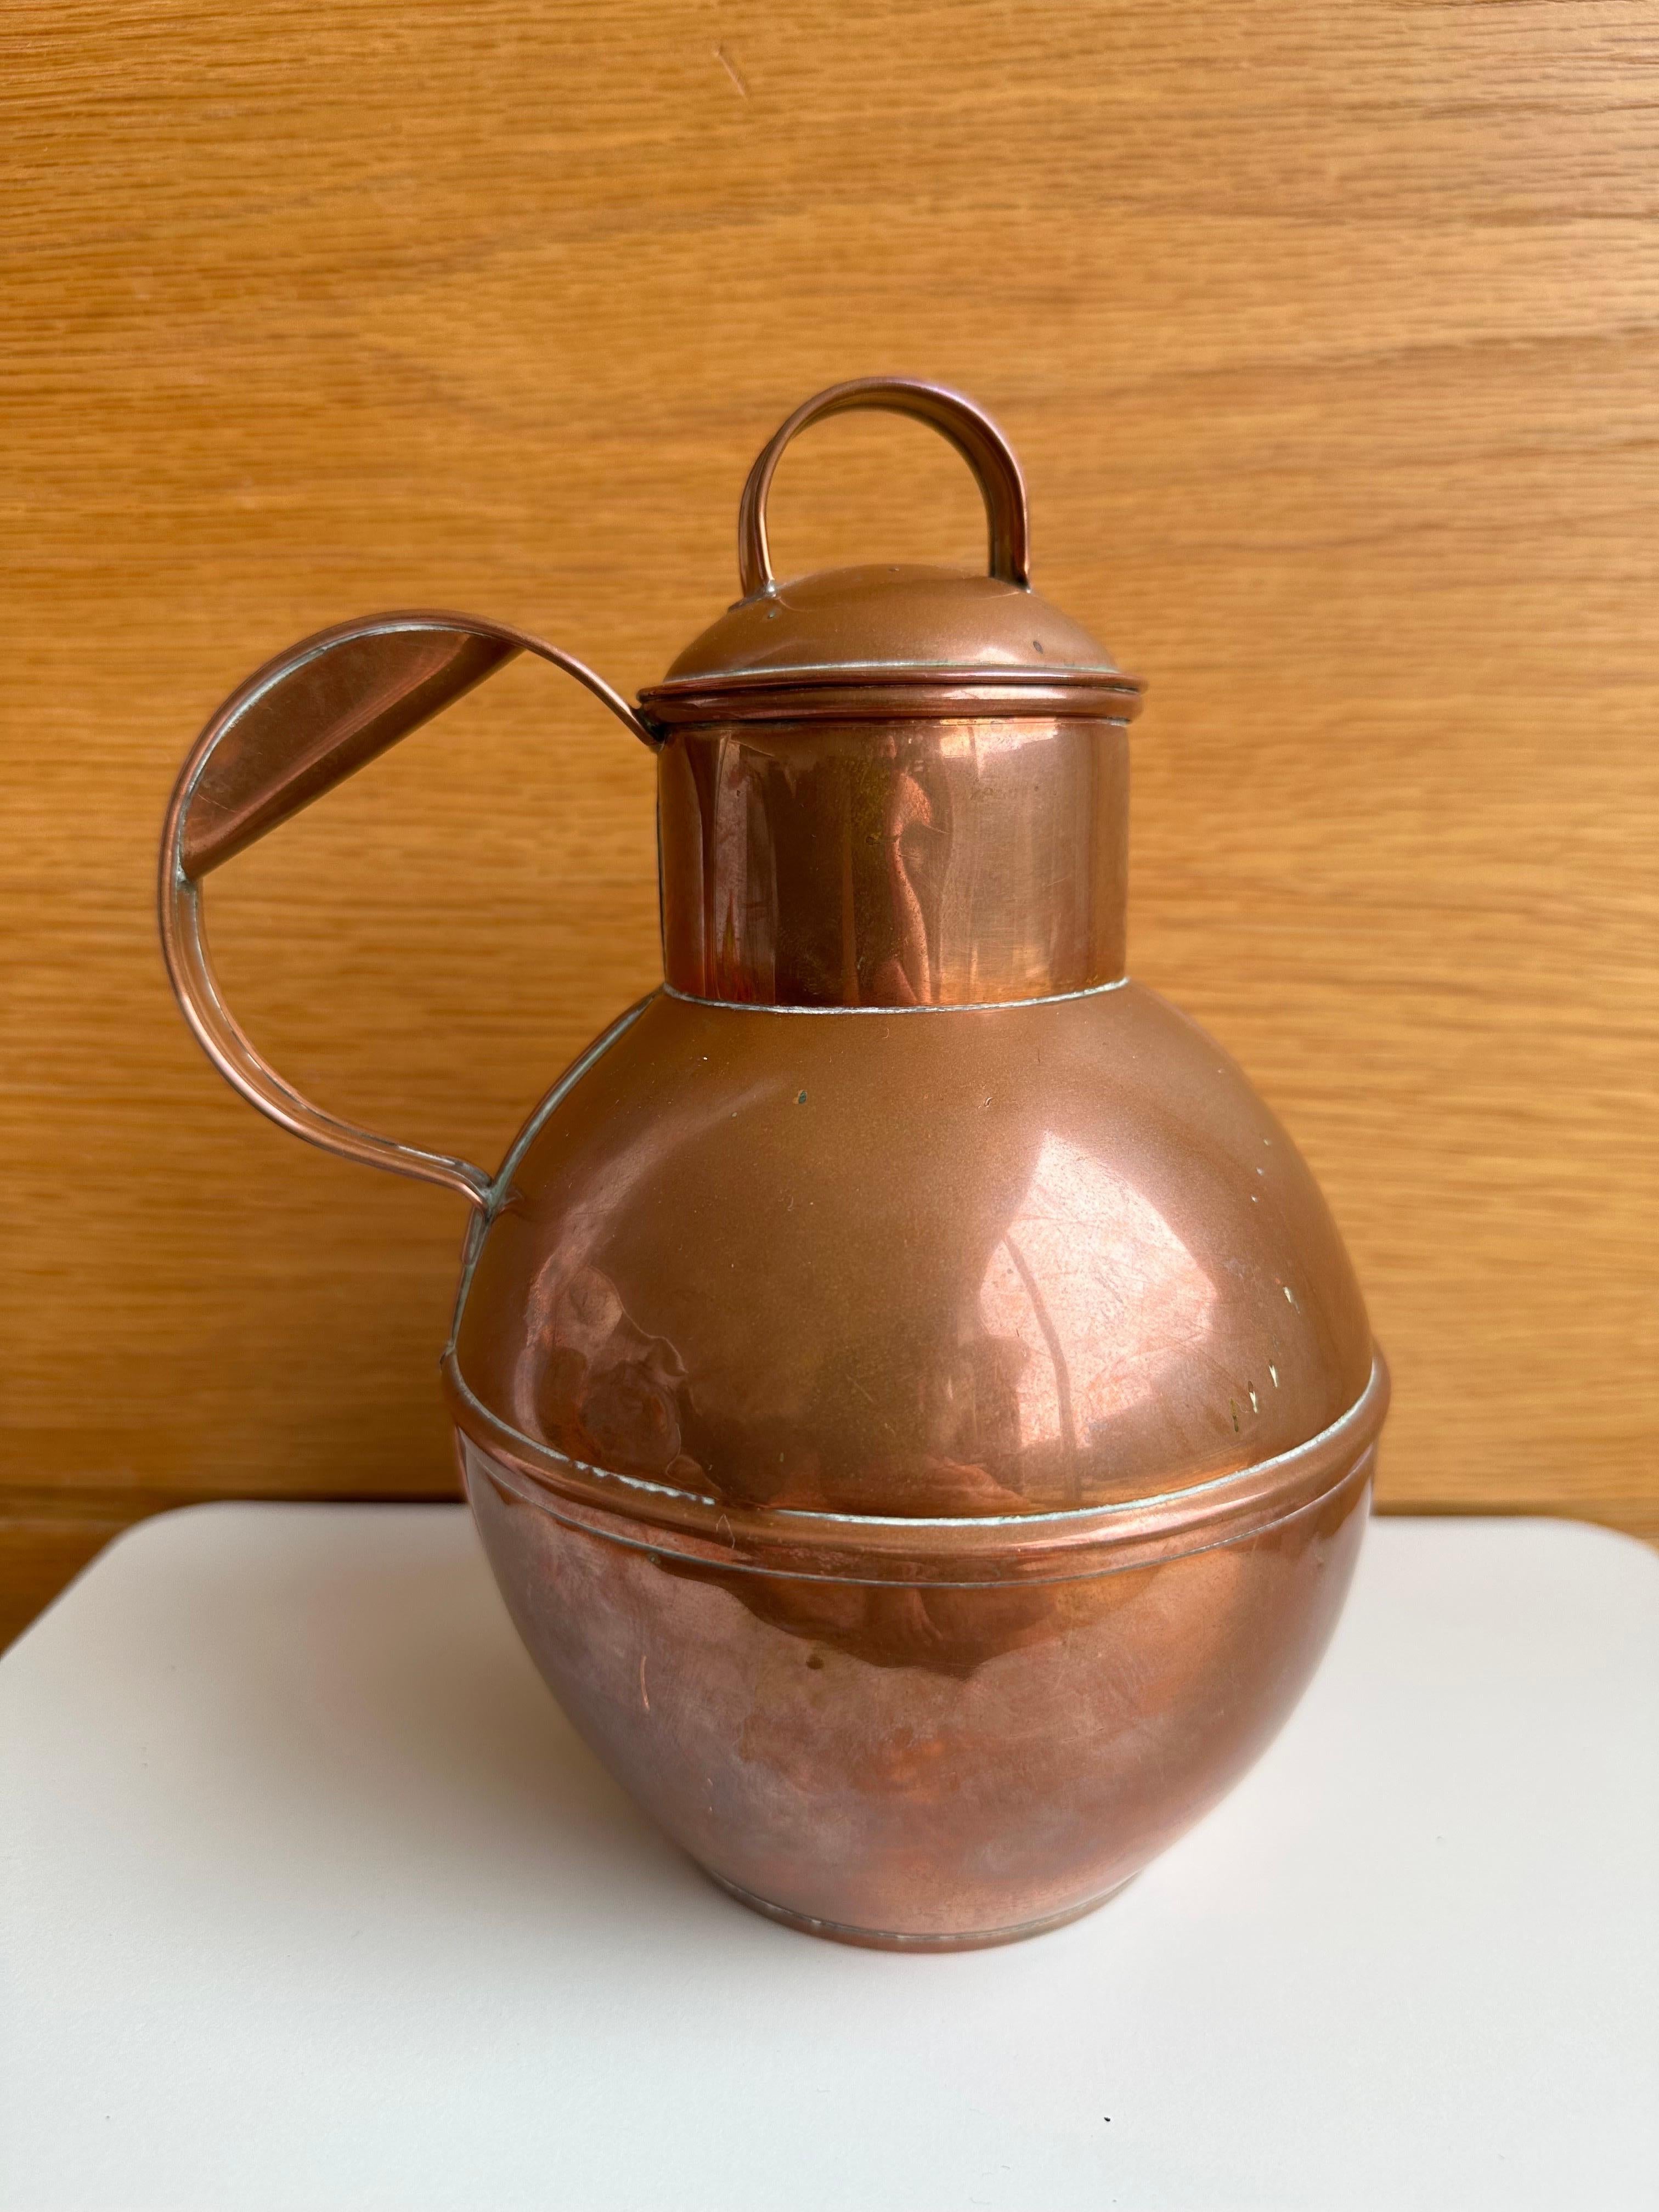 Un magnifique pot à crème à lait en cuivre de Guernesey, 19ème siècle.

Des récipients en cuivre de formes et de tailles variées ont été utilisés dans les maisons et les cuisines anglaises pendant de nombreux siècles. Le cuivre et ses alliages